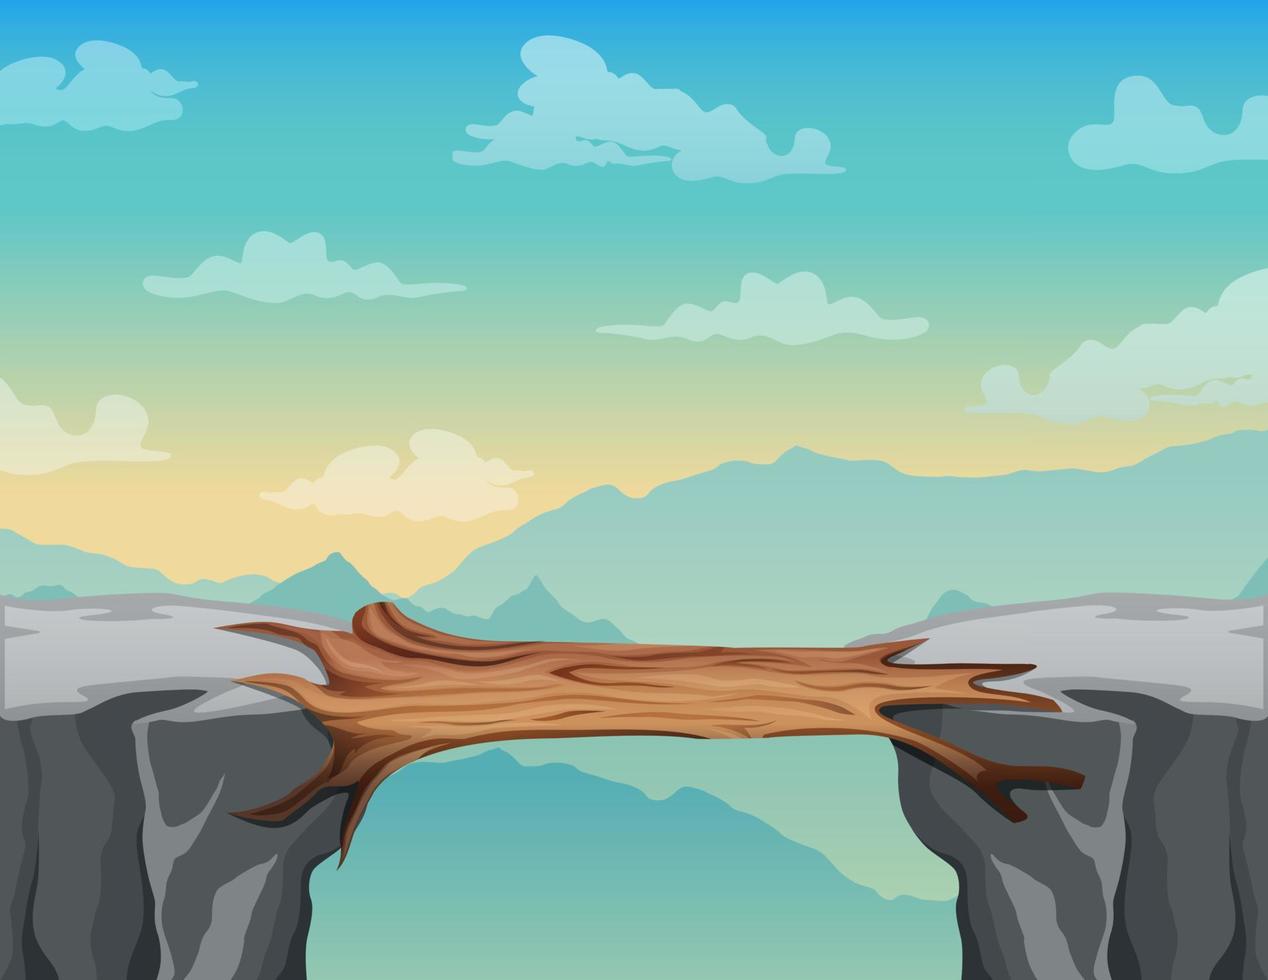 puente de troncos entre montañas sobre un acantilado en un paisaje de picos rocosos vector